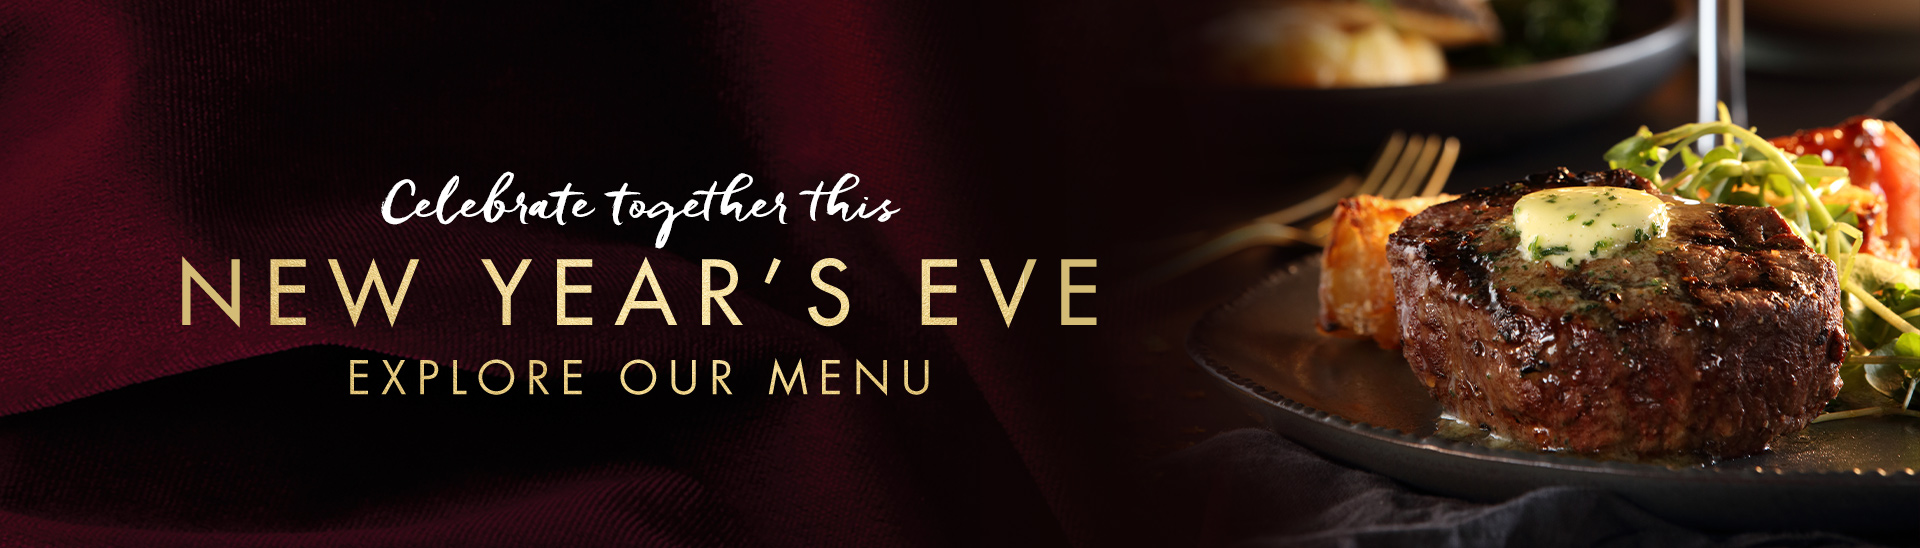 New Year’s eve menu at Miller & Carter Taplow 